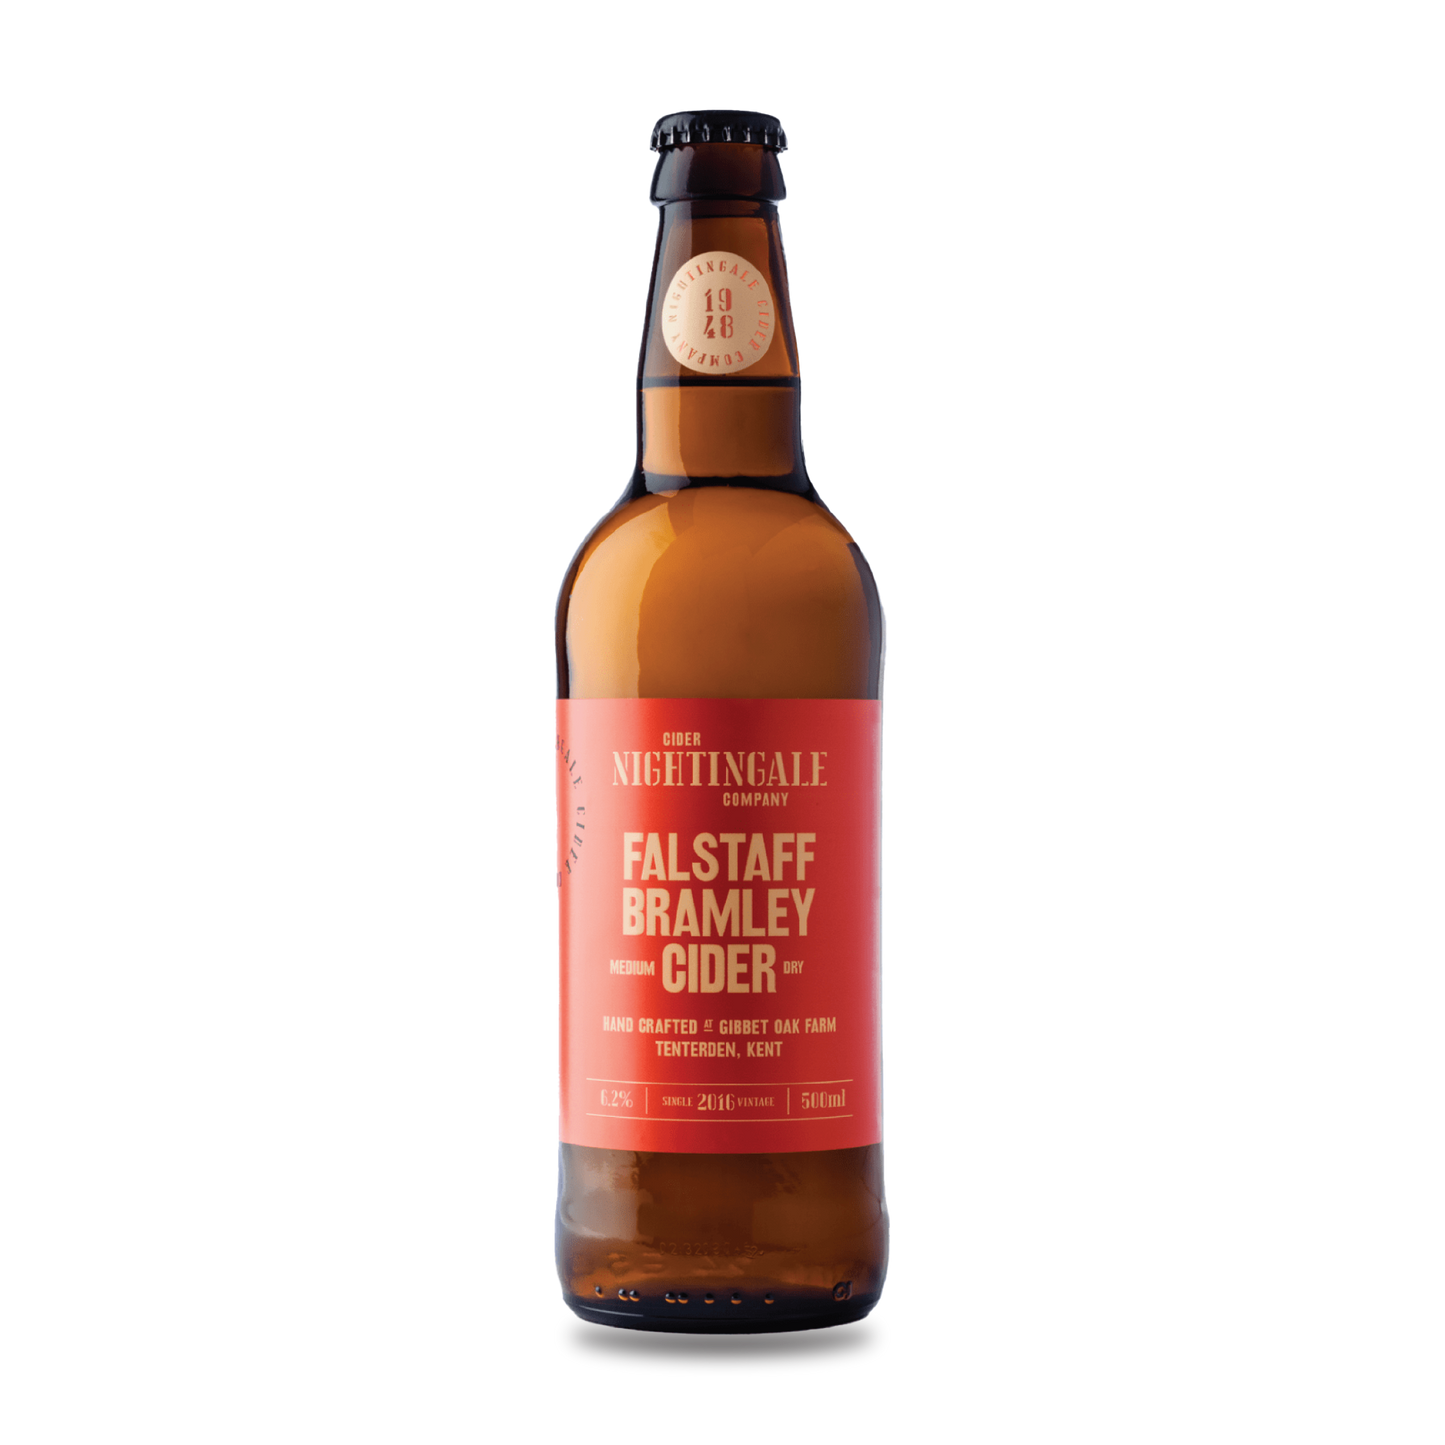 Falstaff Bramley cider bottle